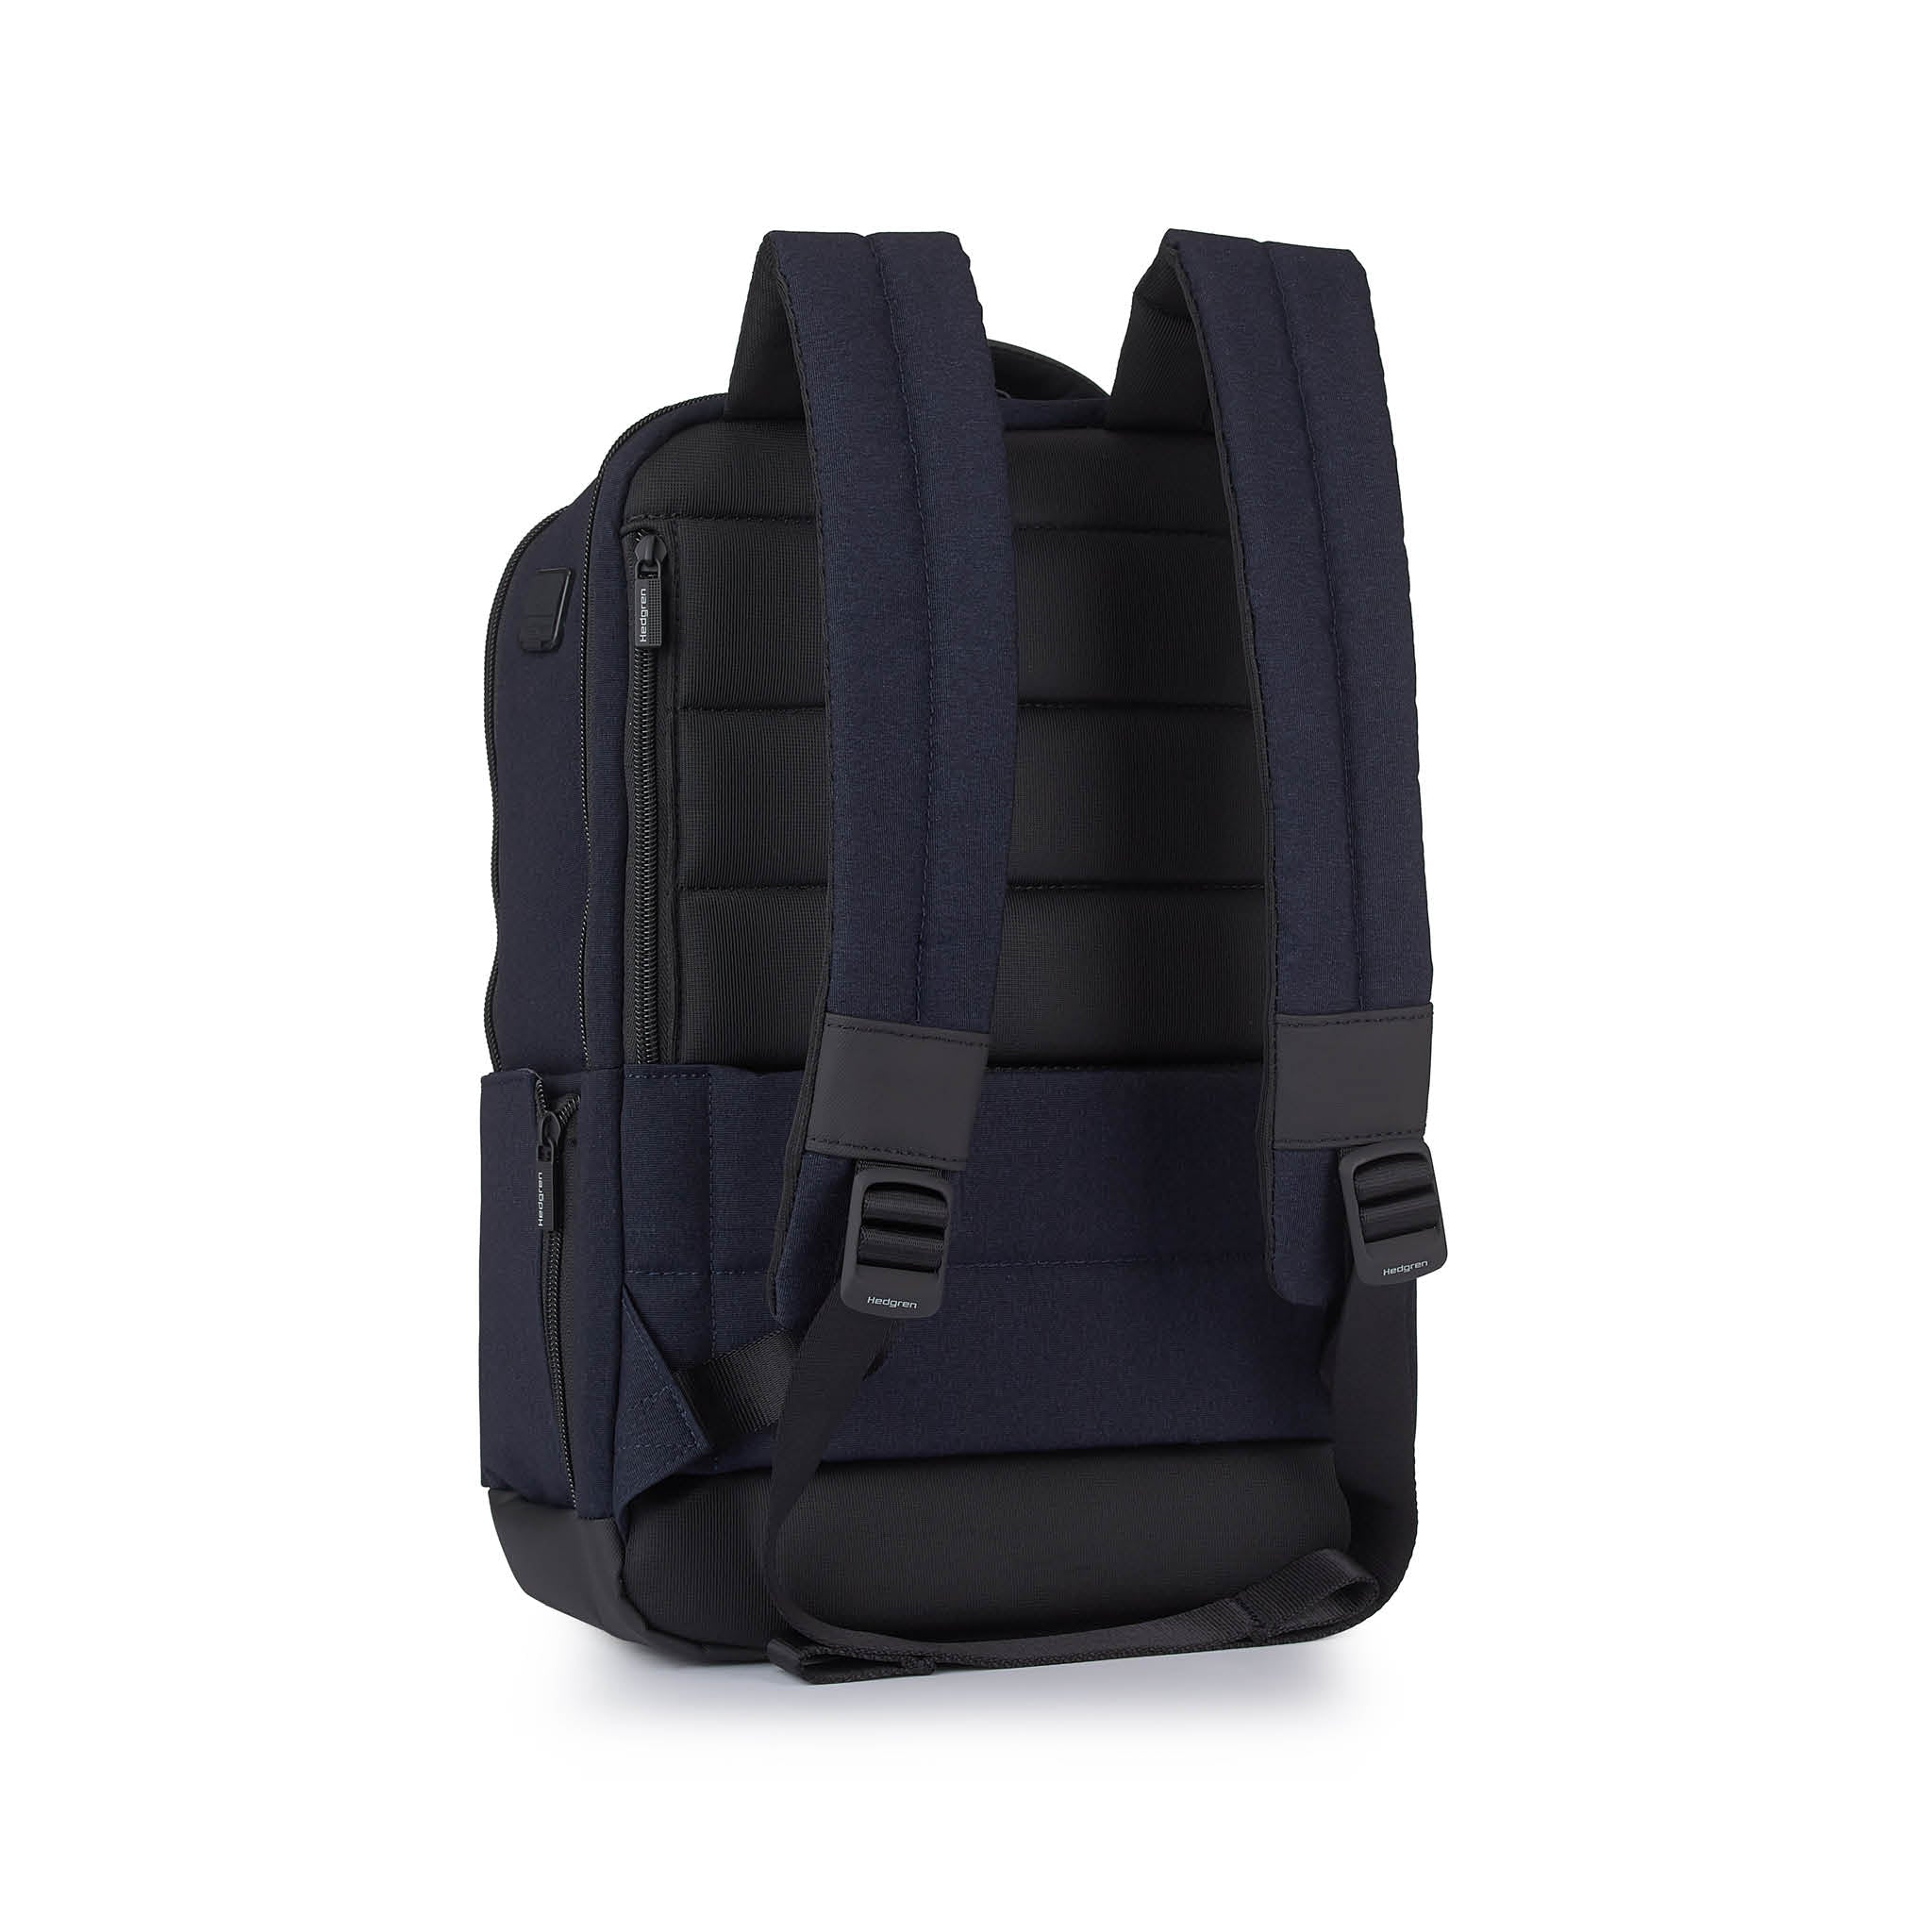 Hedgren Drive 14.1" Laptop Backpack Elegant Blue